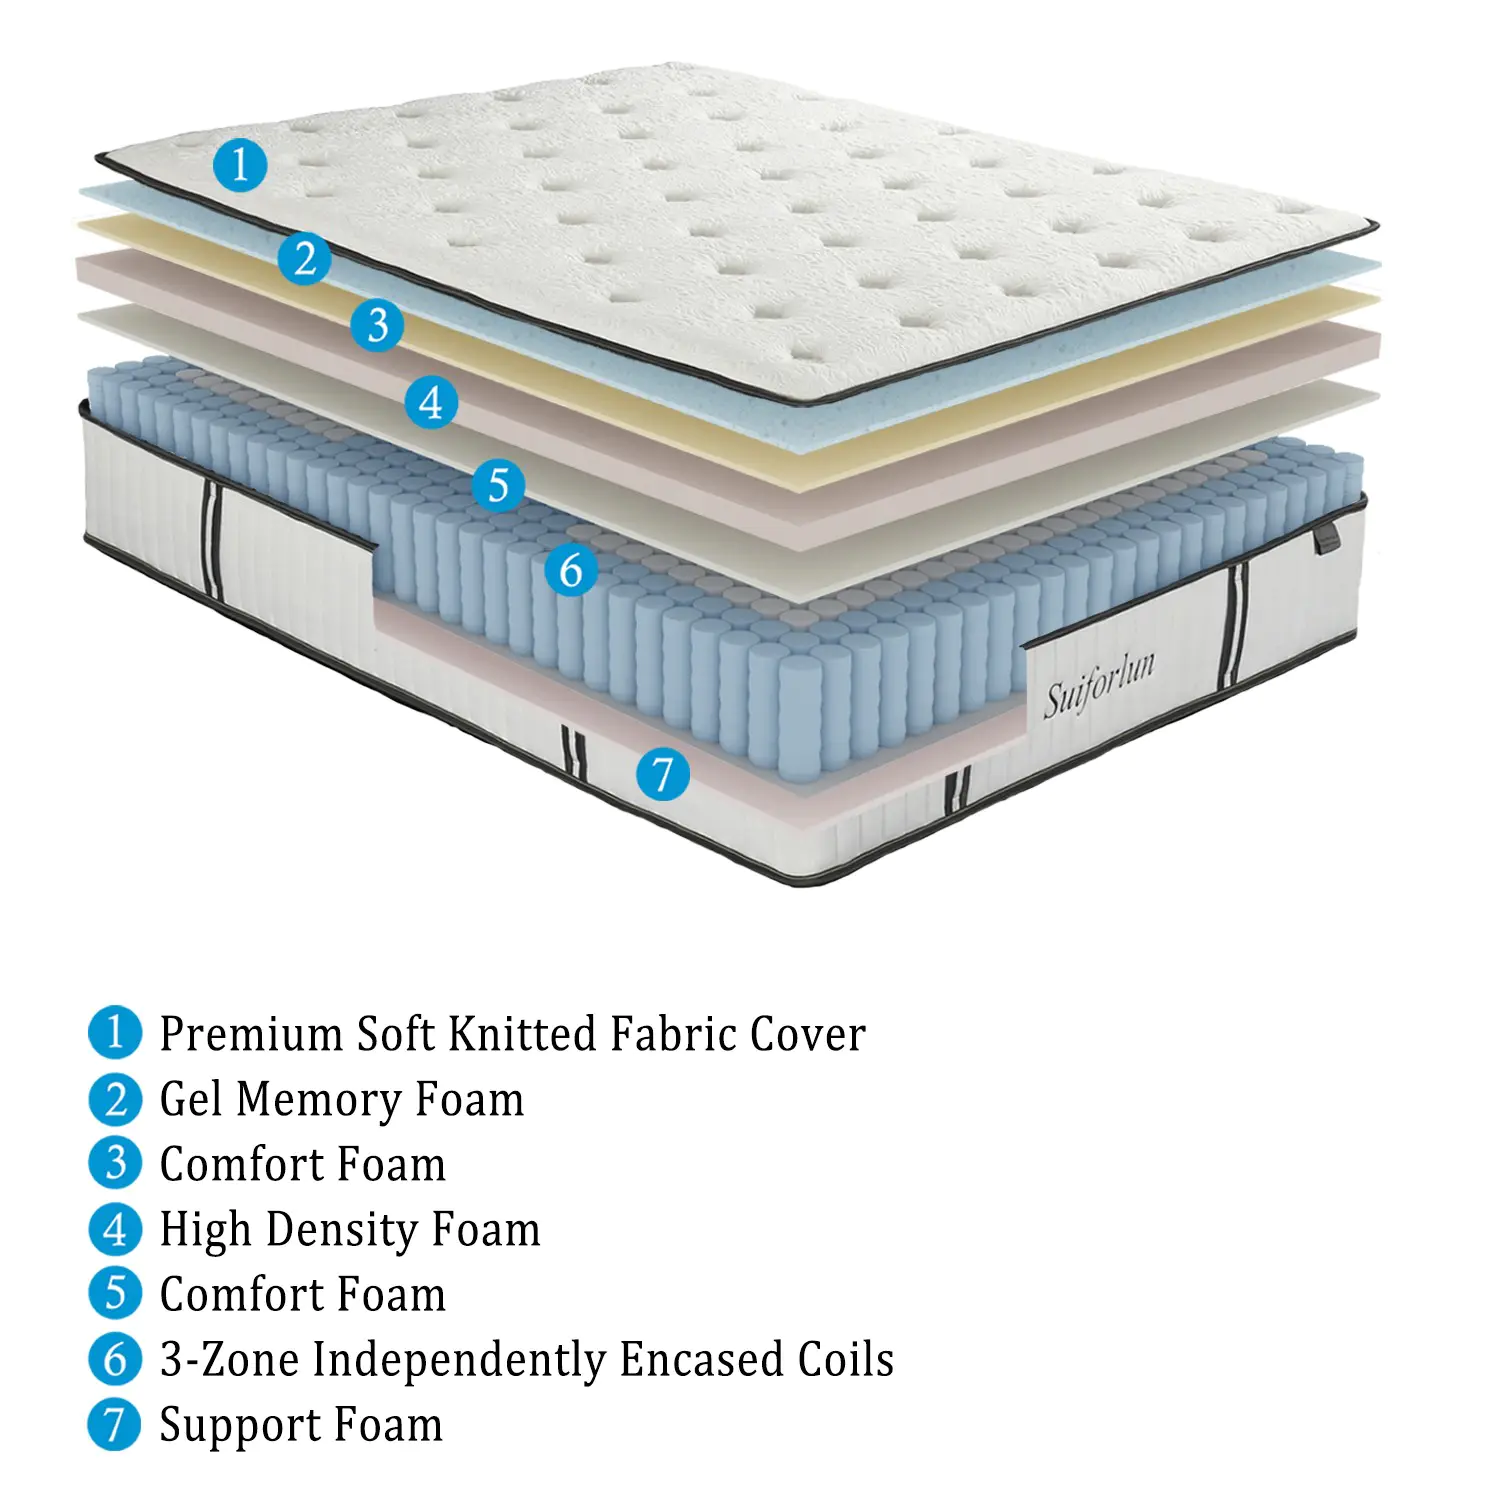 Suiforlun mattress chicest hybrid bed quick transaction